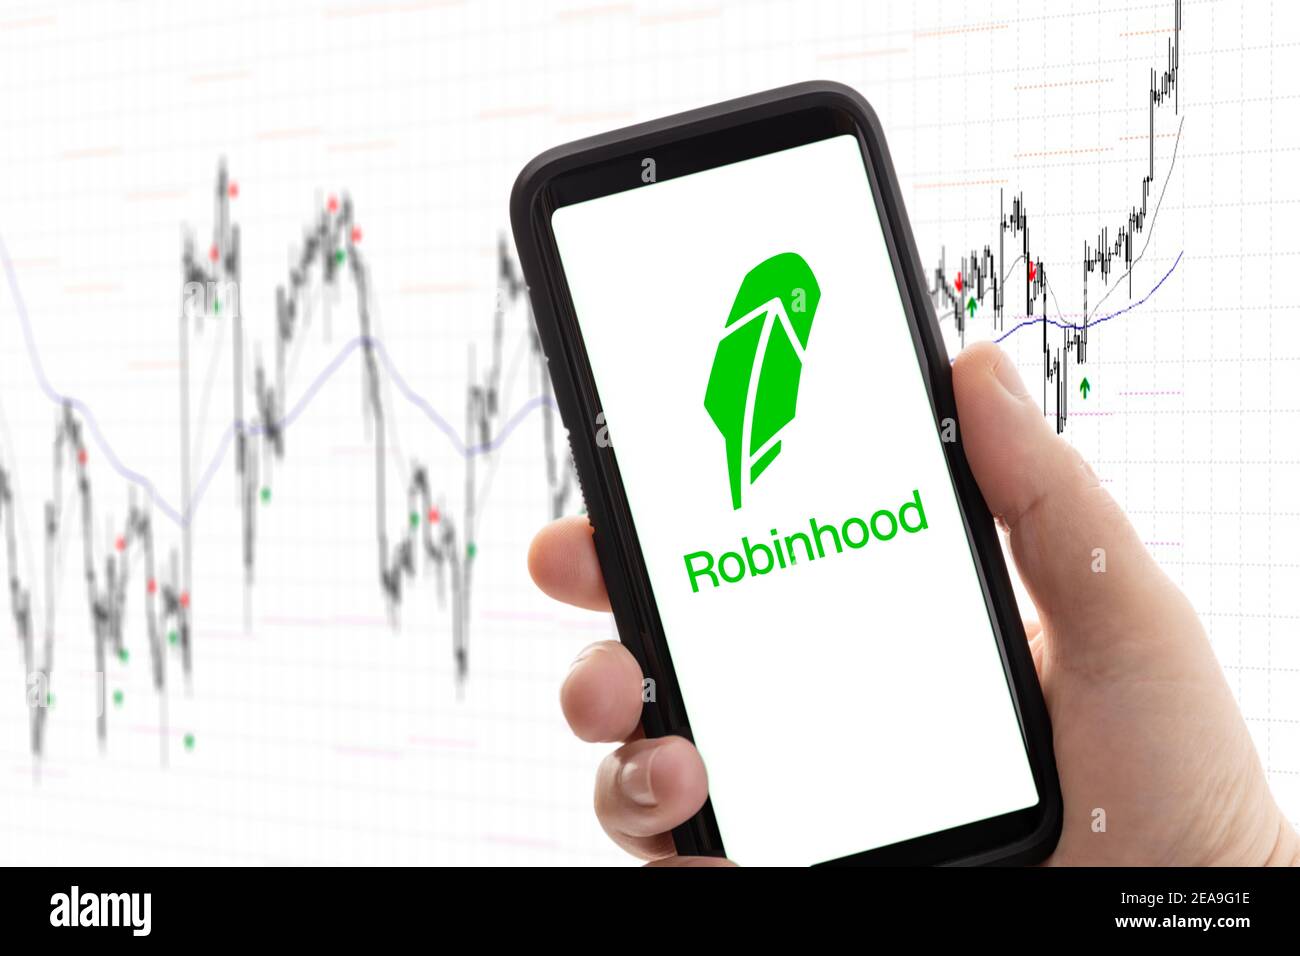 Galicia, Spanien; 08. februar 2020: Hand mit Mobiltelefon mit Logo des Maklers Robinhood auf dem Bildschirm und Aktienchart im Hintergrund. App für den Handel, mone Stockfoto